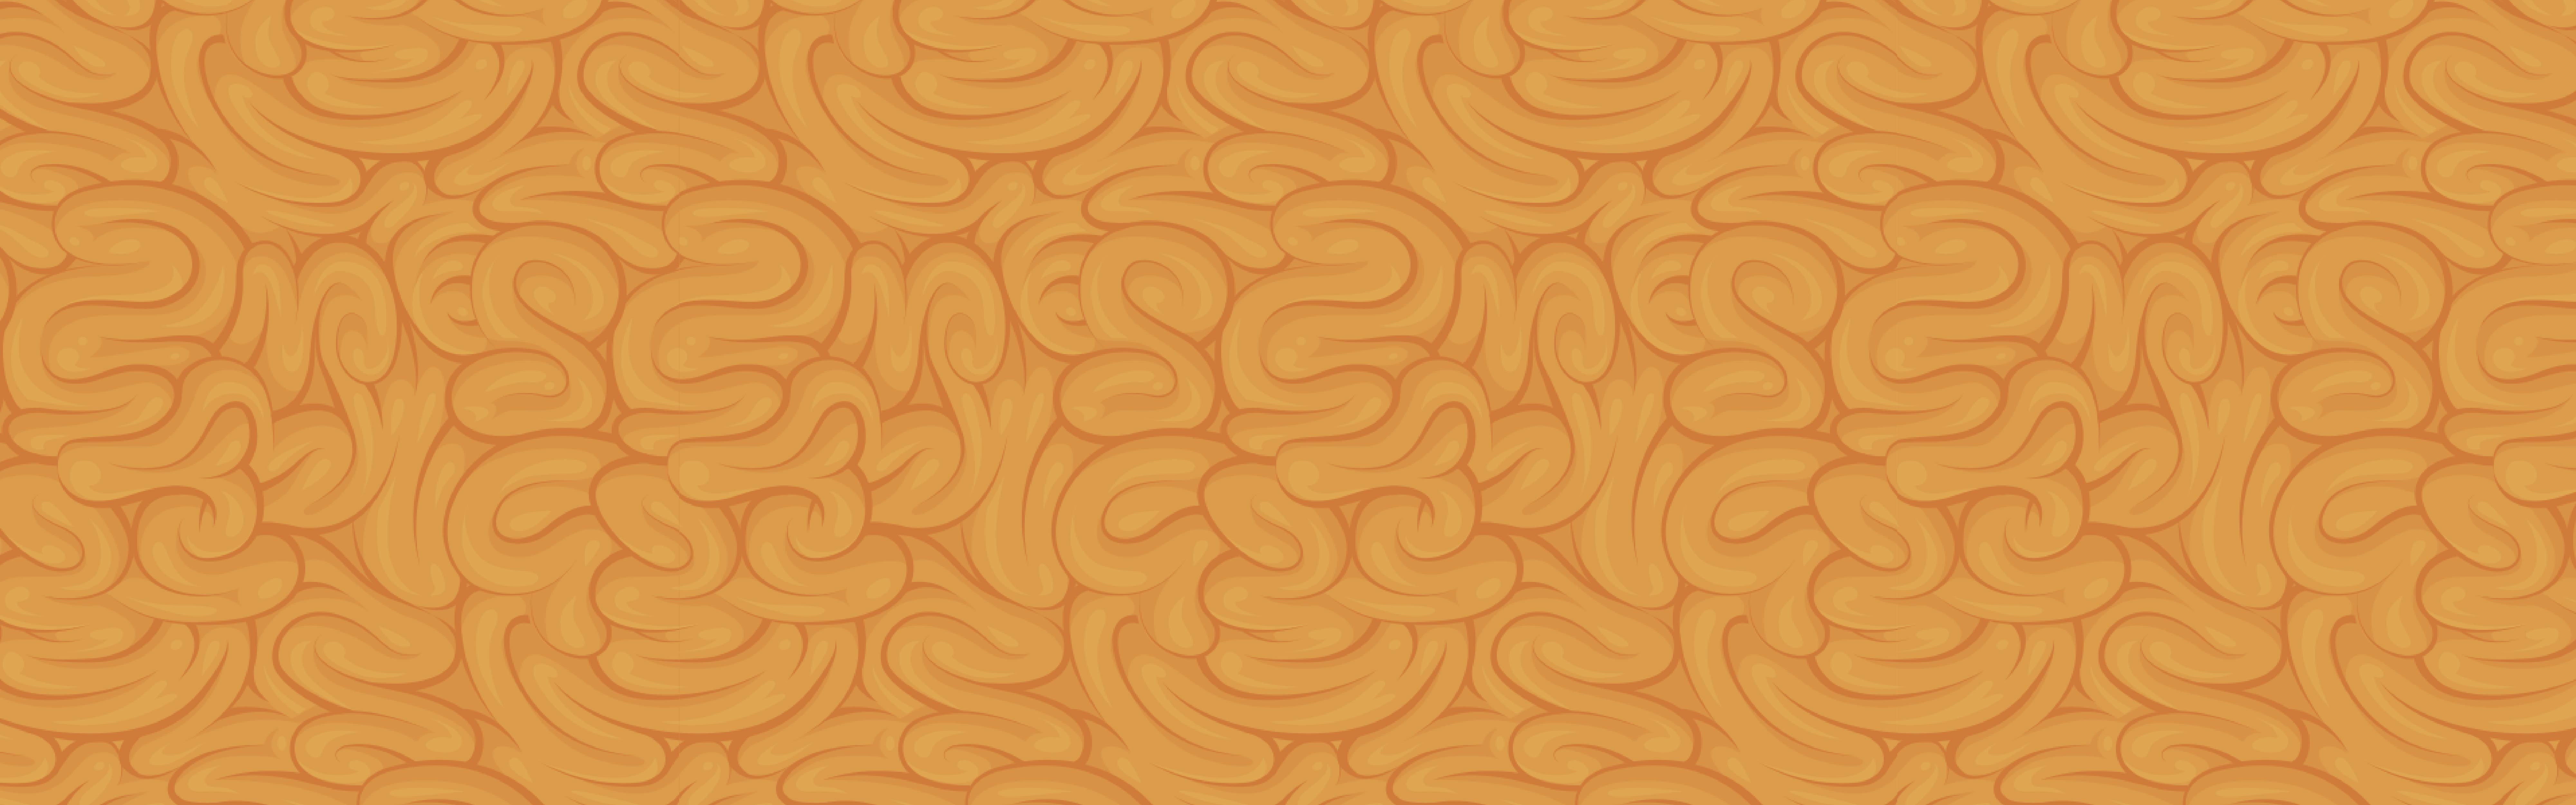 brain pattern